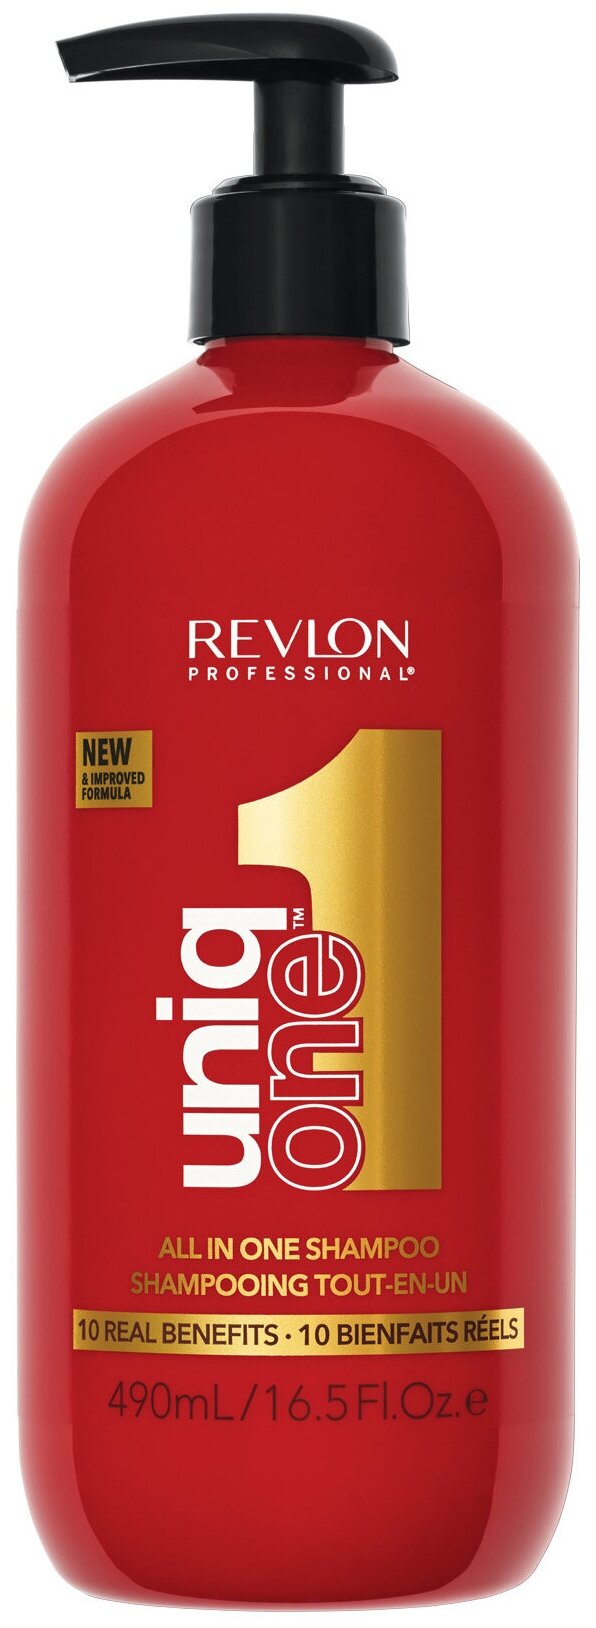 Многофункциональный шампунь Revlon для волос, 490 мл